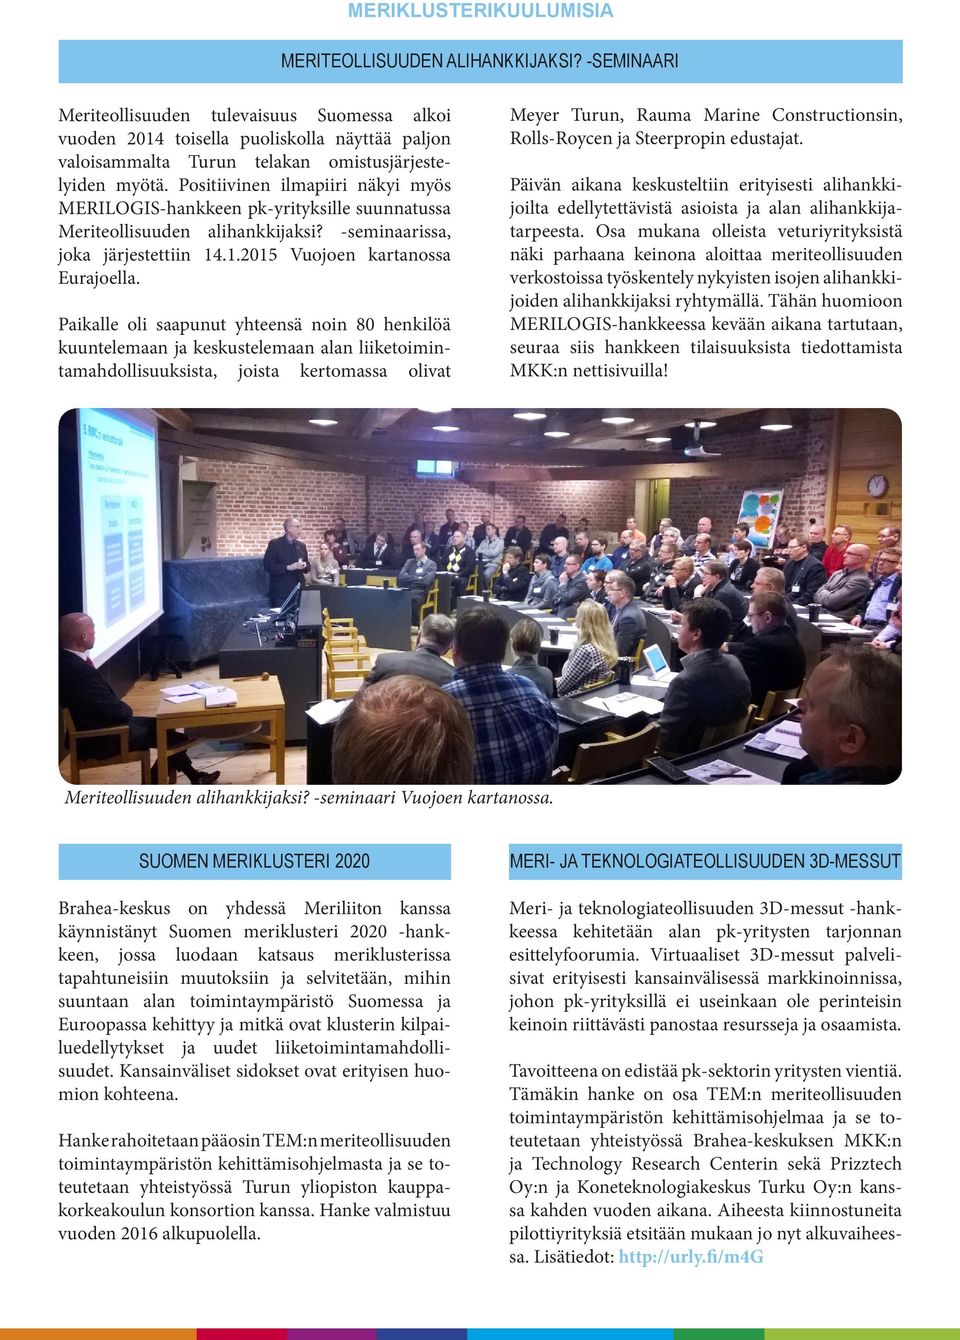 Positiivinen ilmapiiri näkyi myös MERILOGIS-hankkeen pk-yrityksille suunnatussa Meriteollisuuden alihankkijaksi? -seminaarissa, joka järjestettiin 14.1.2015 Vuojoen kartanossa Eurajoella.